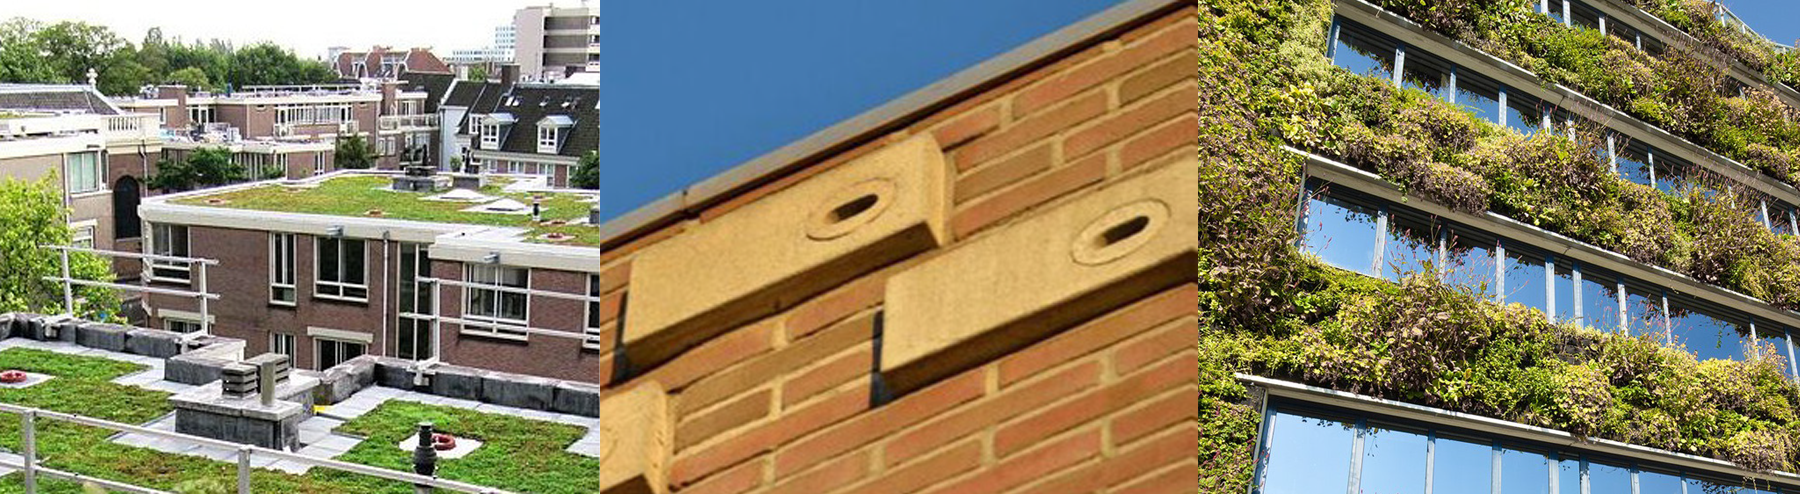 Beeld 1: Voorbeeldfoto van een plat dak, bedekt met sedem Beeld 2: Voorbeeldfoto van een gevel met nestkasten Beeld 3: Voorbeeldfoto van een gevel bedekt met ramen en groene beplanting